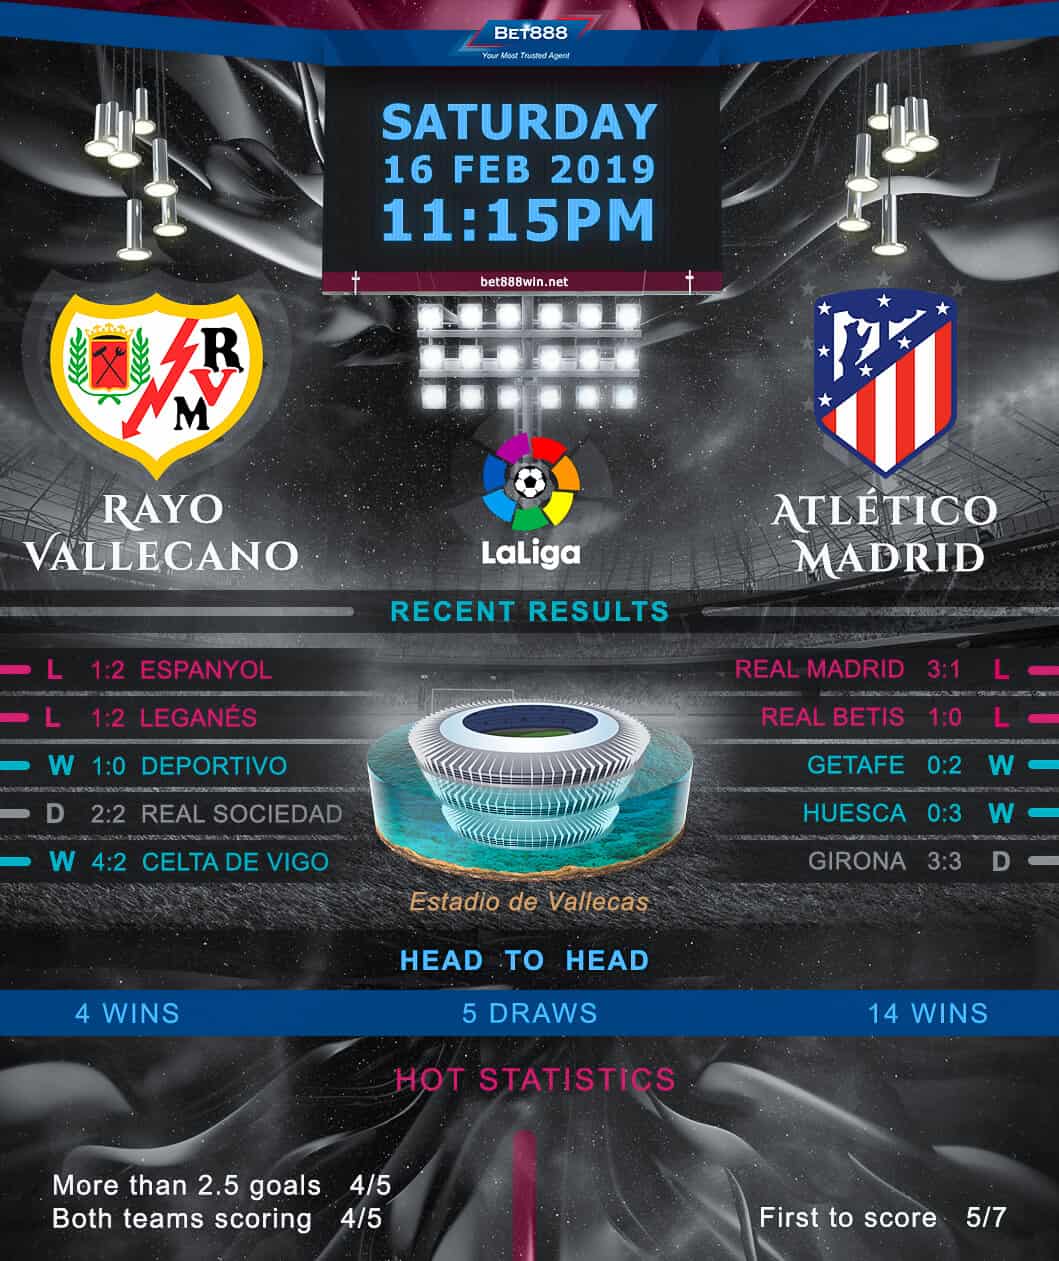 Rayo Vallecano vs Atletico Madrid 16/02/19